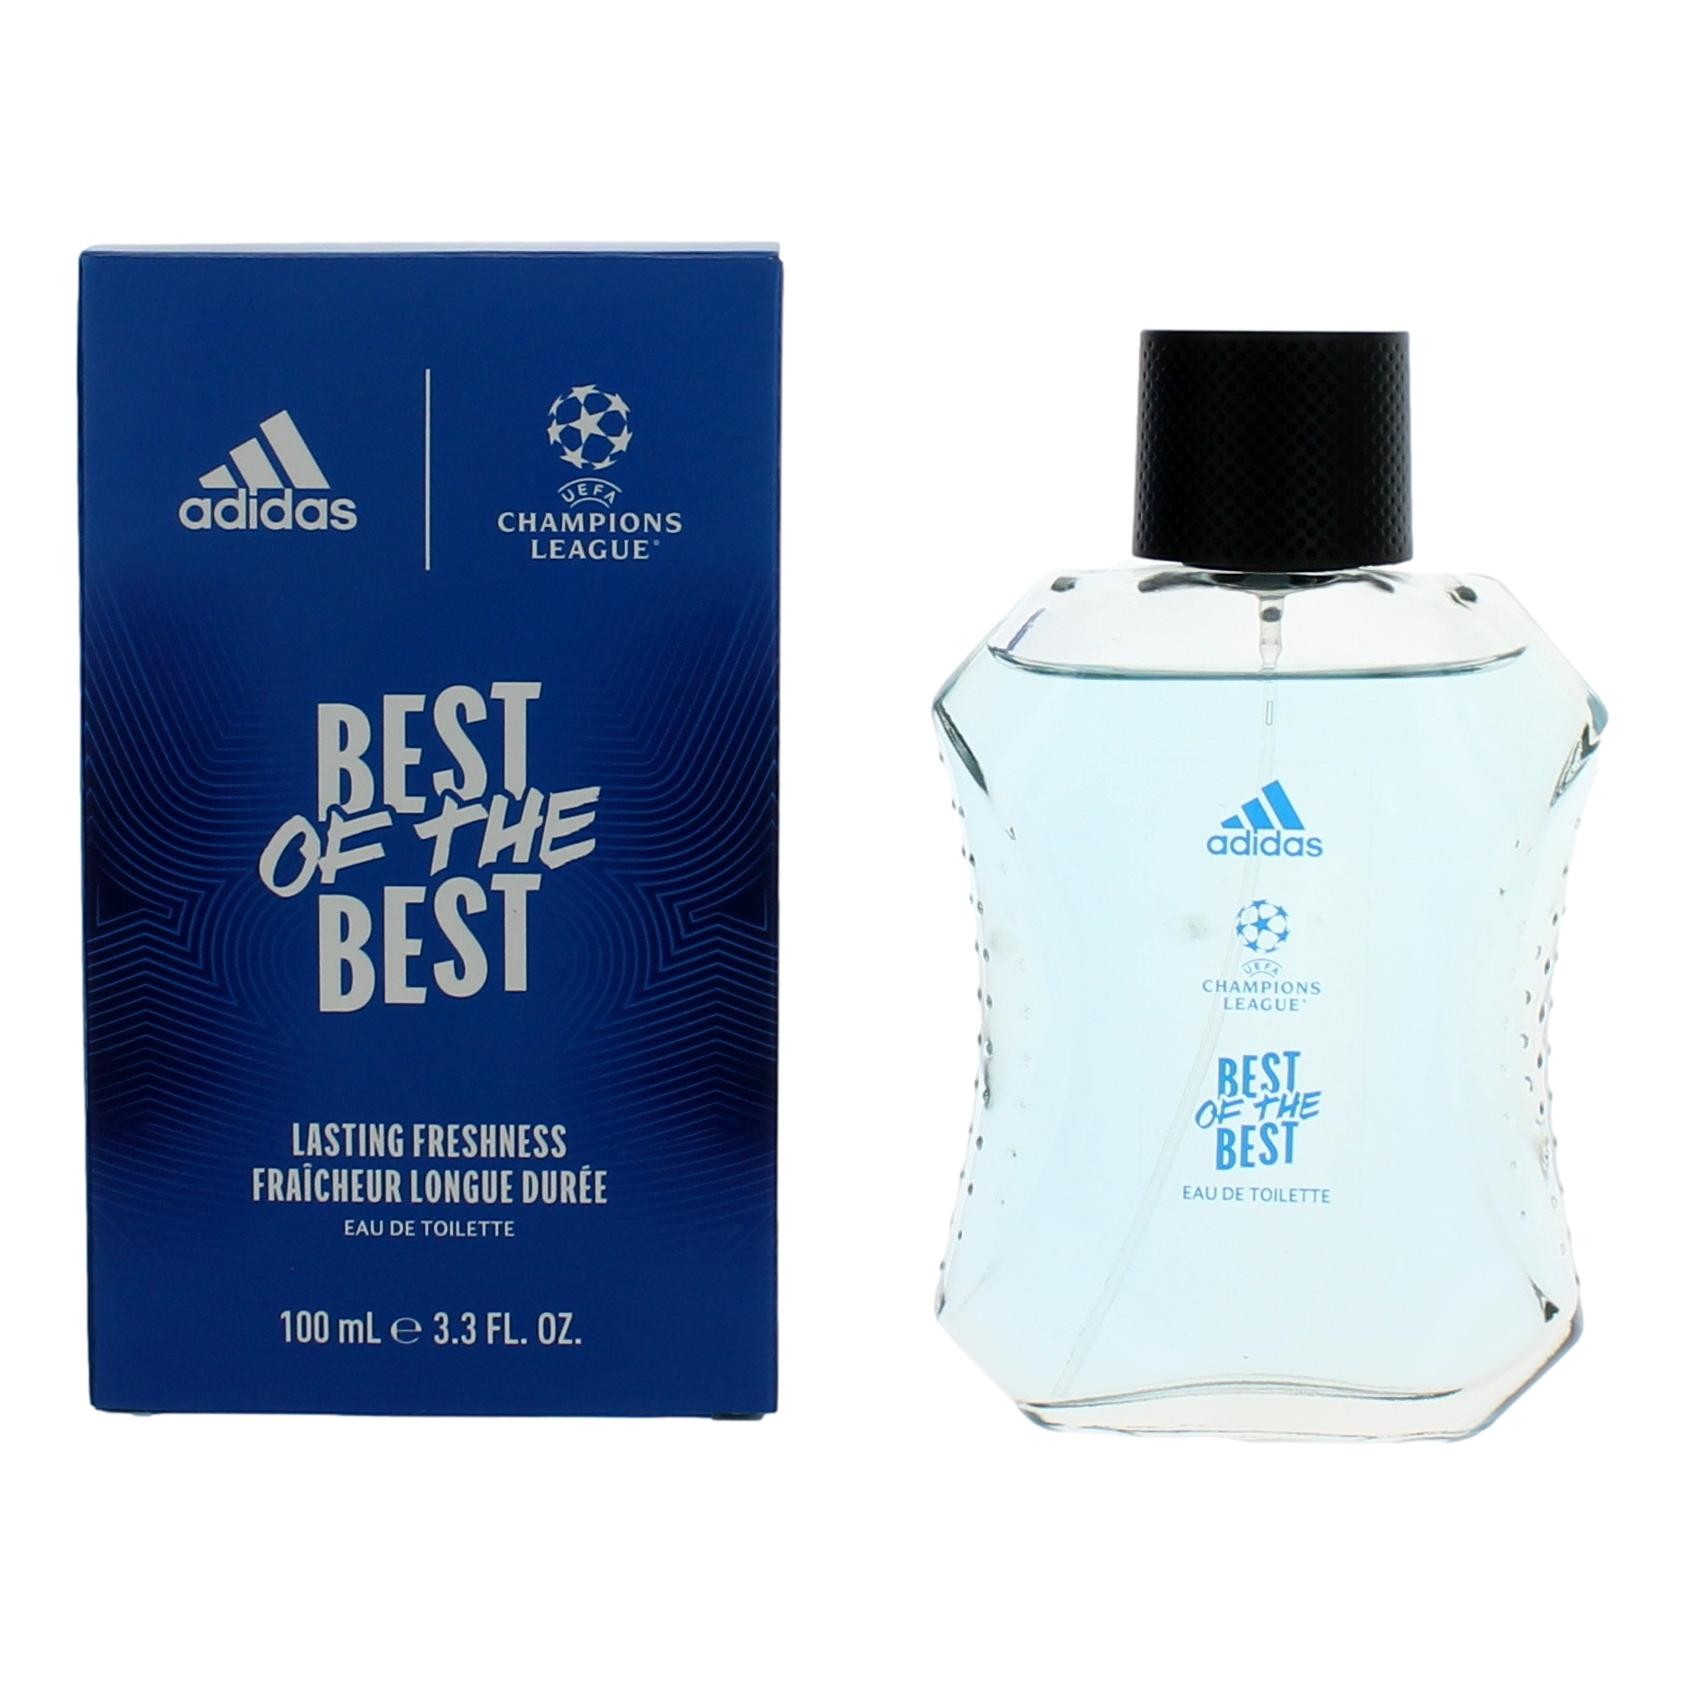 Adidas Champions League Best of the Best by Adidas 3.3 oz Eau De Toilette Spray for Men